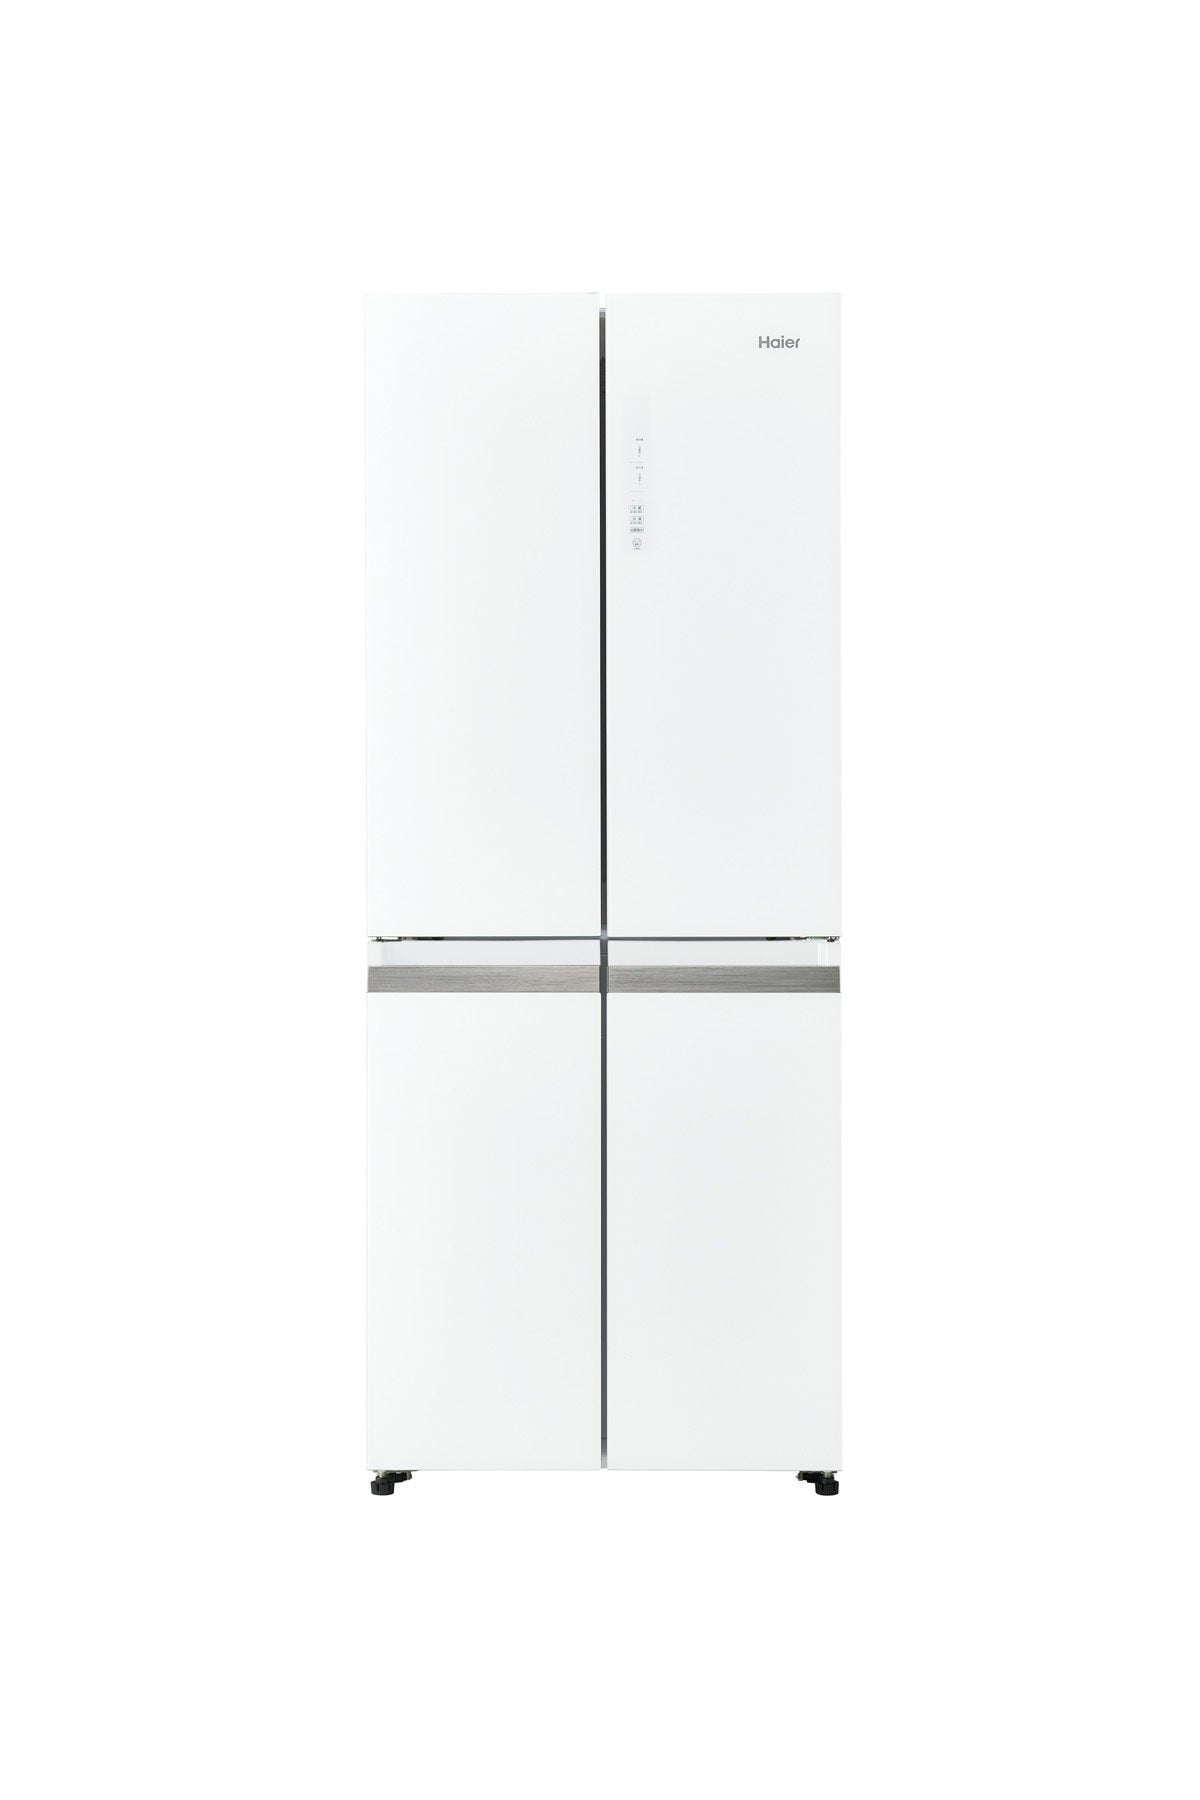 ハイアールから“大きな冷凍室”が主役の4ドア冷蔵庫、470・406Lの2機種 